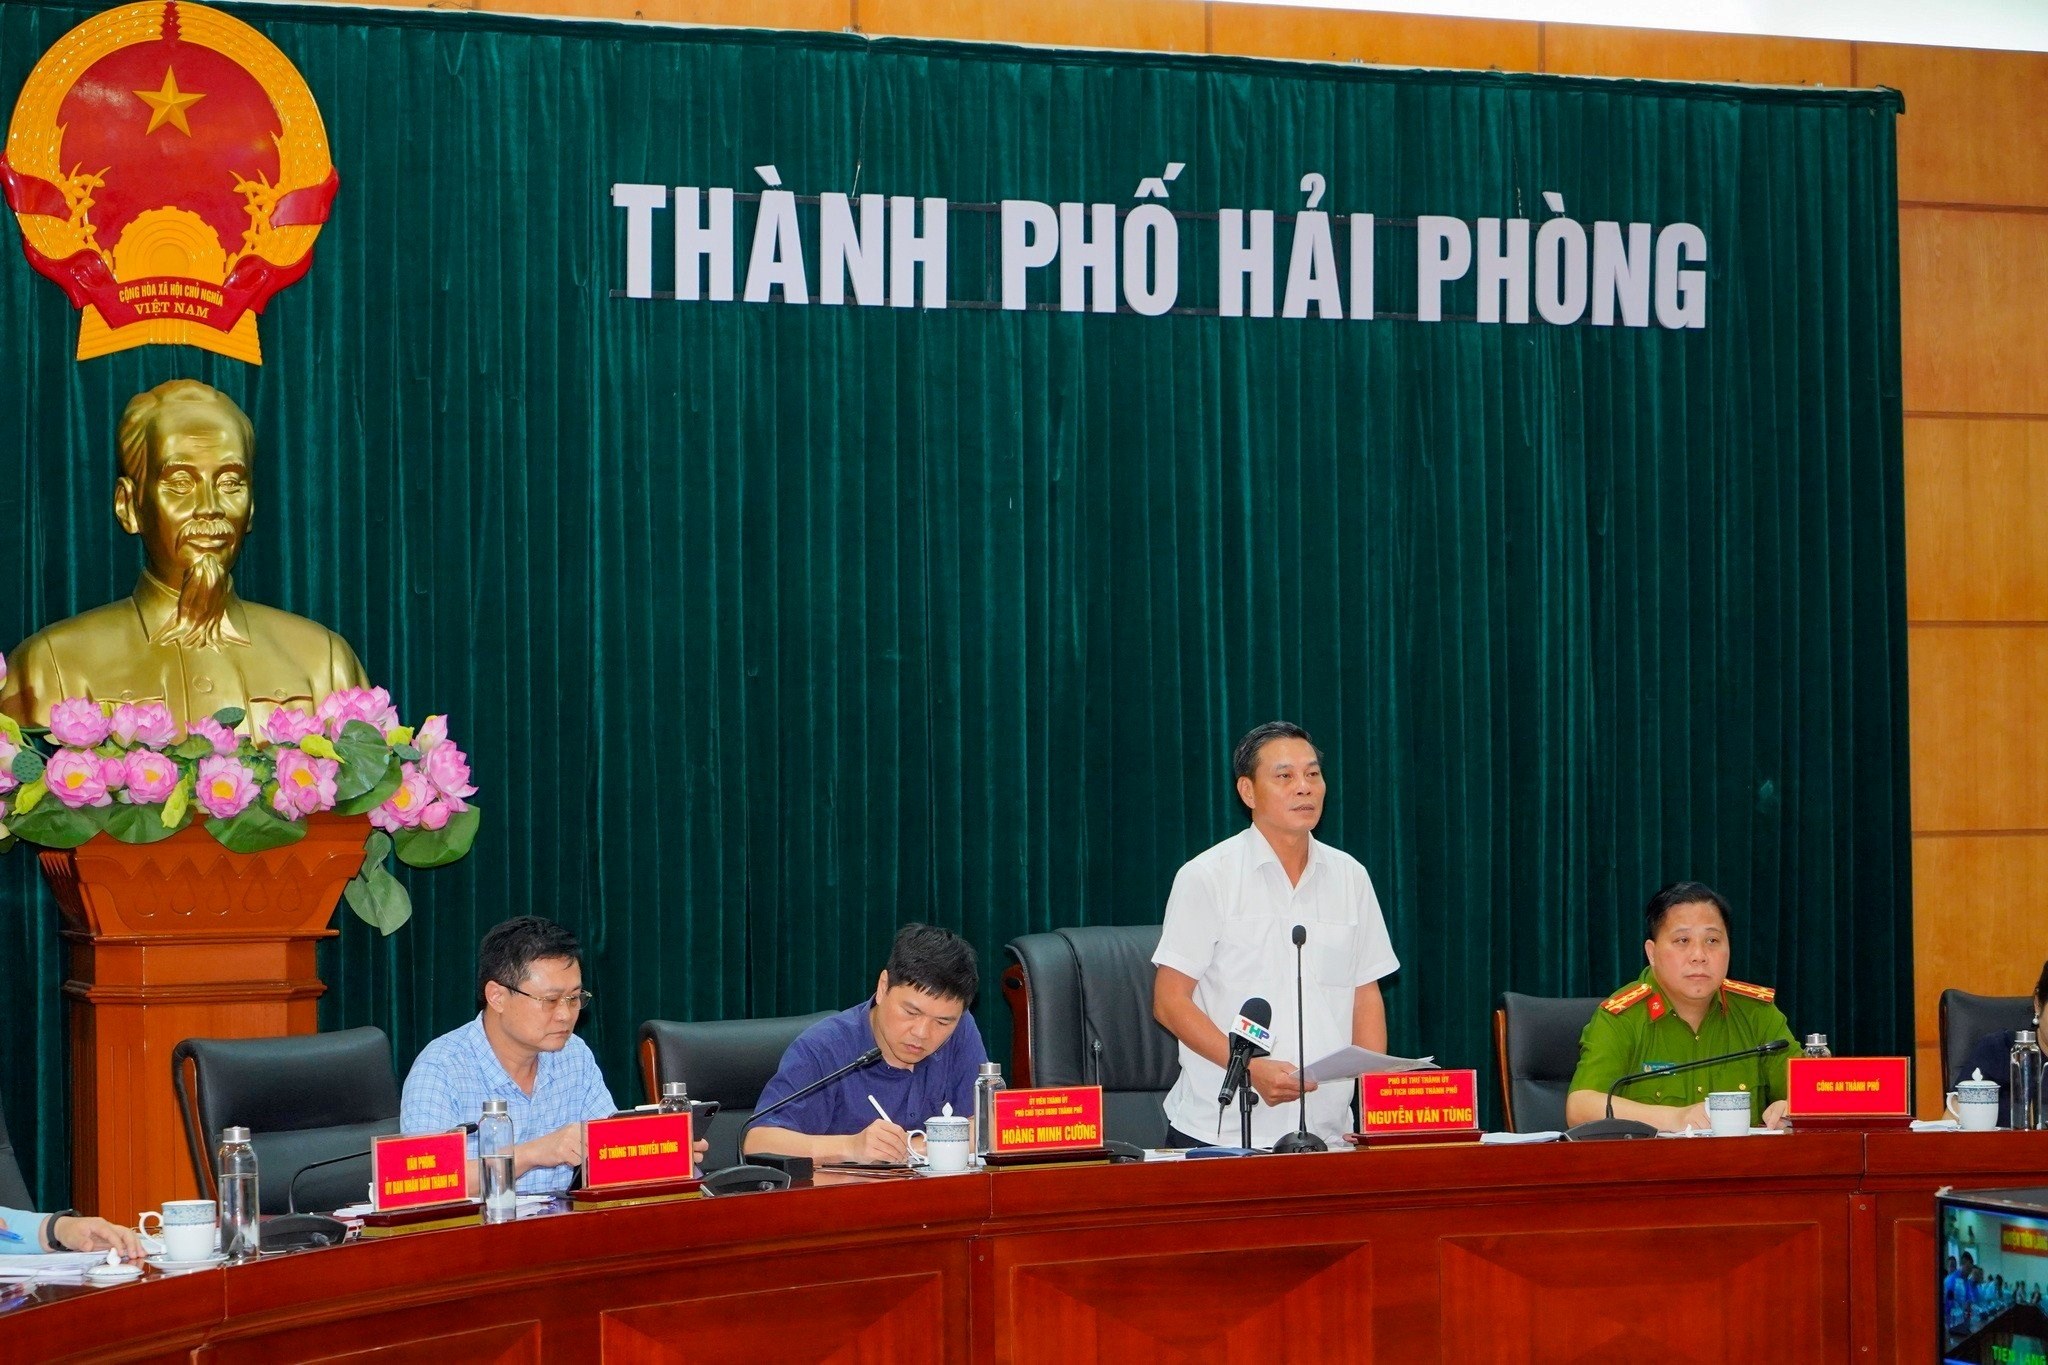 Ông Nguyễn Văn Tùng, Chủ tịch UBND TP. Hải Phòng phát biểu chỉ đạo tại Hội nghị